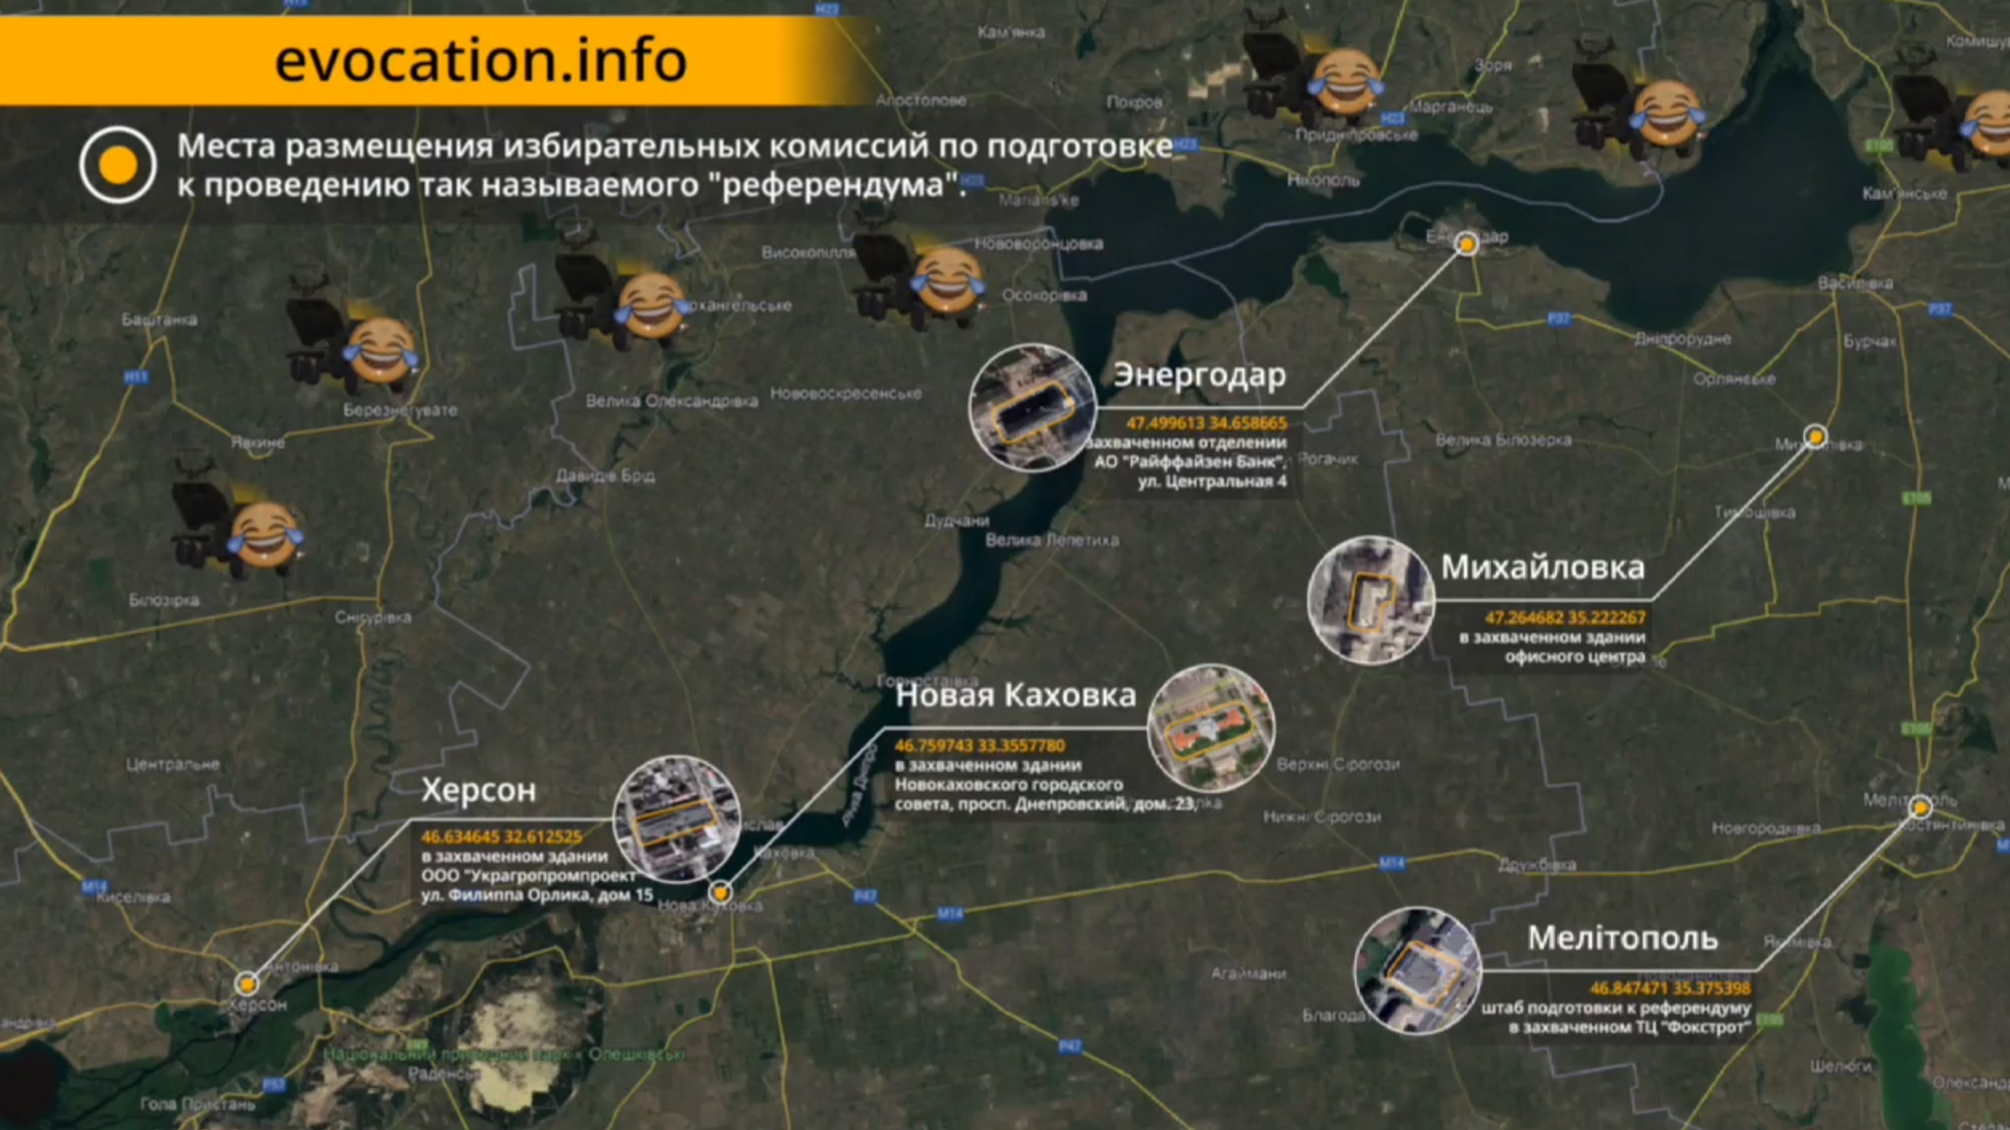 Коллаборанты 'засветили' локации 'избирательных штабов' псевдореферендумов на Херсонщине и Запорожье (карта)